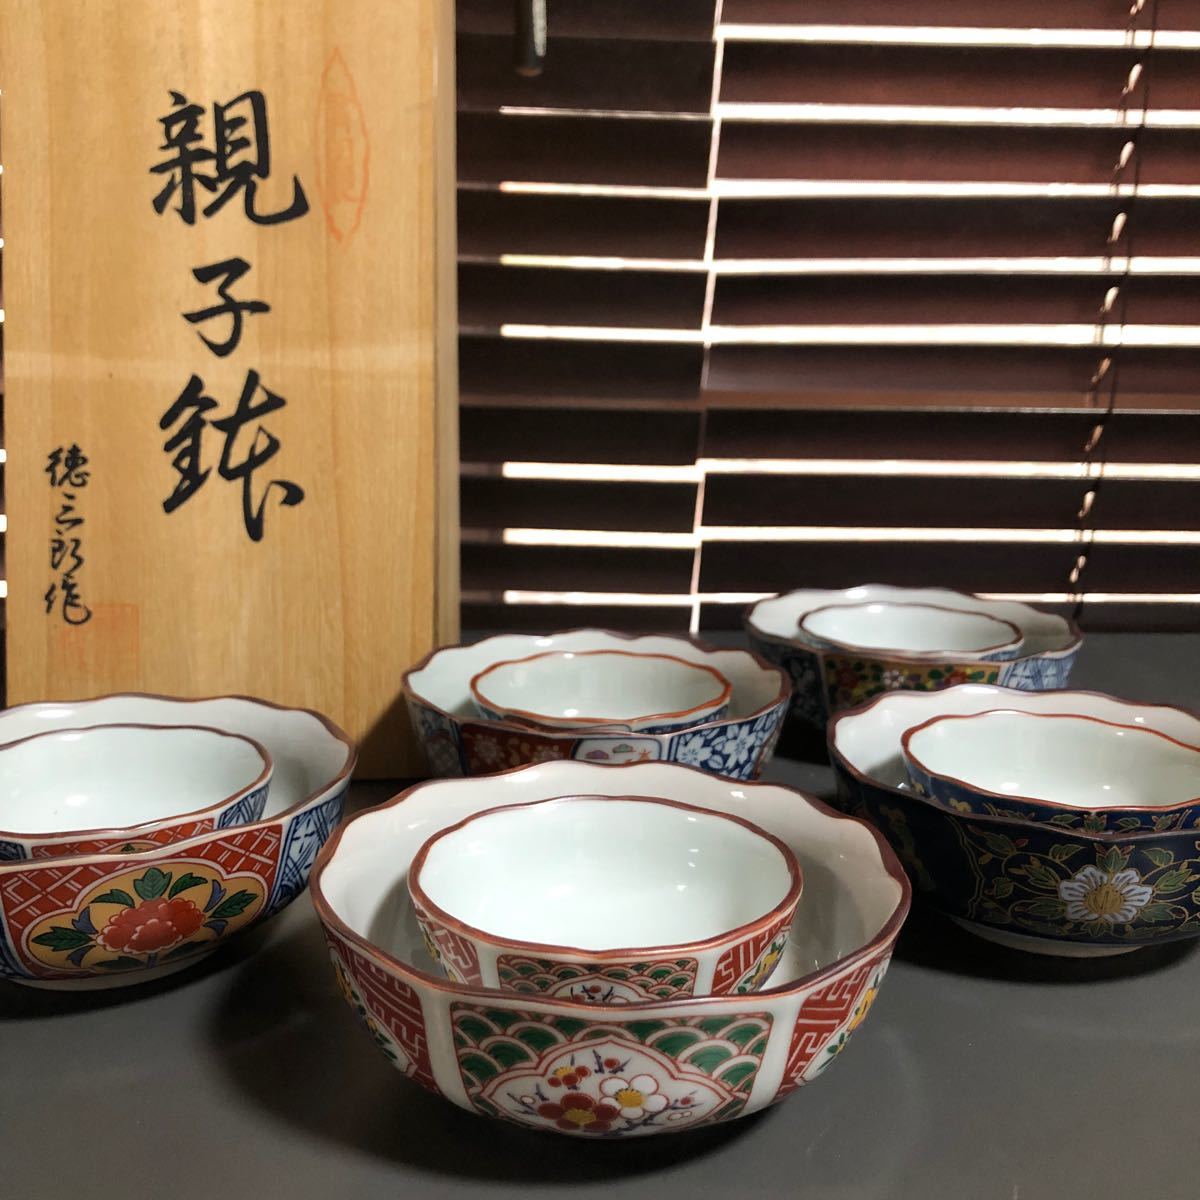 有田焼 悠章窯 親子鉢 徳三郎作 5組10点セット 木箱付き 和食器 中鉢 小鉢の画像1